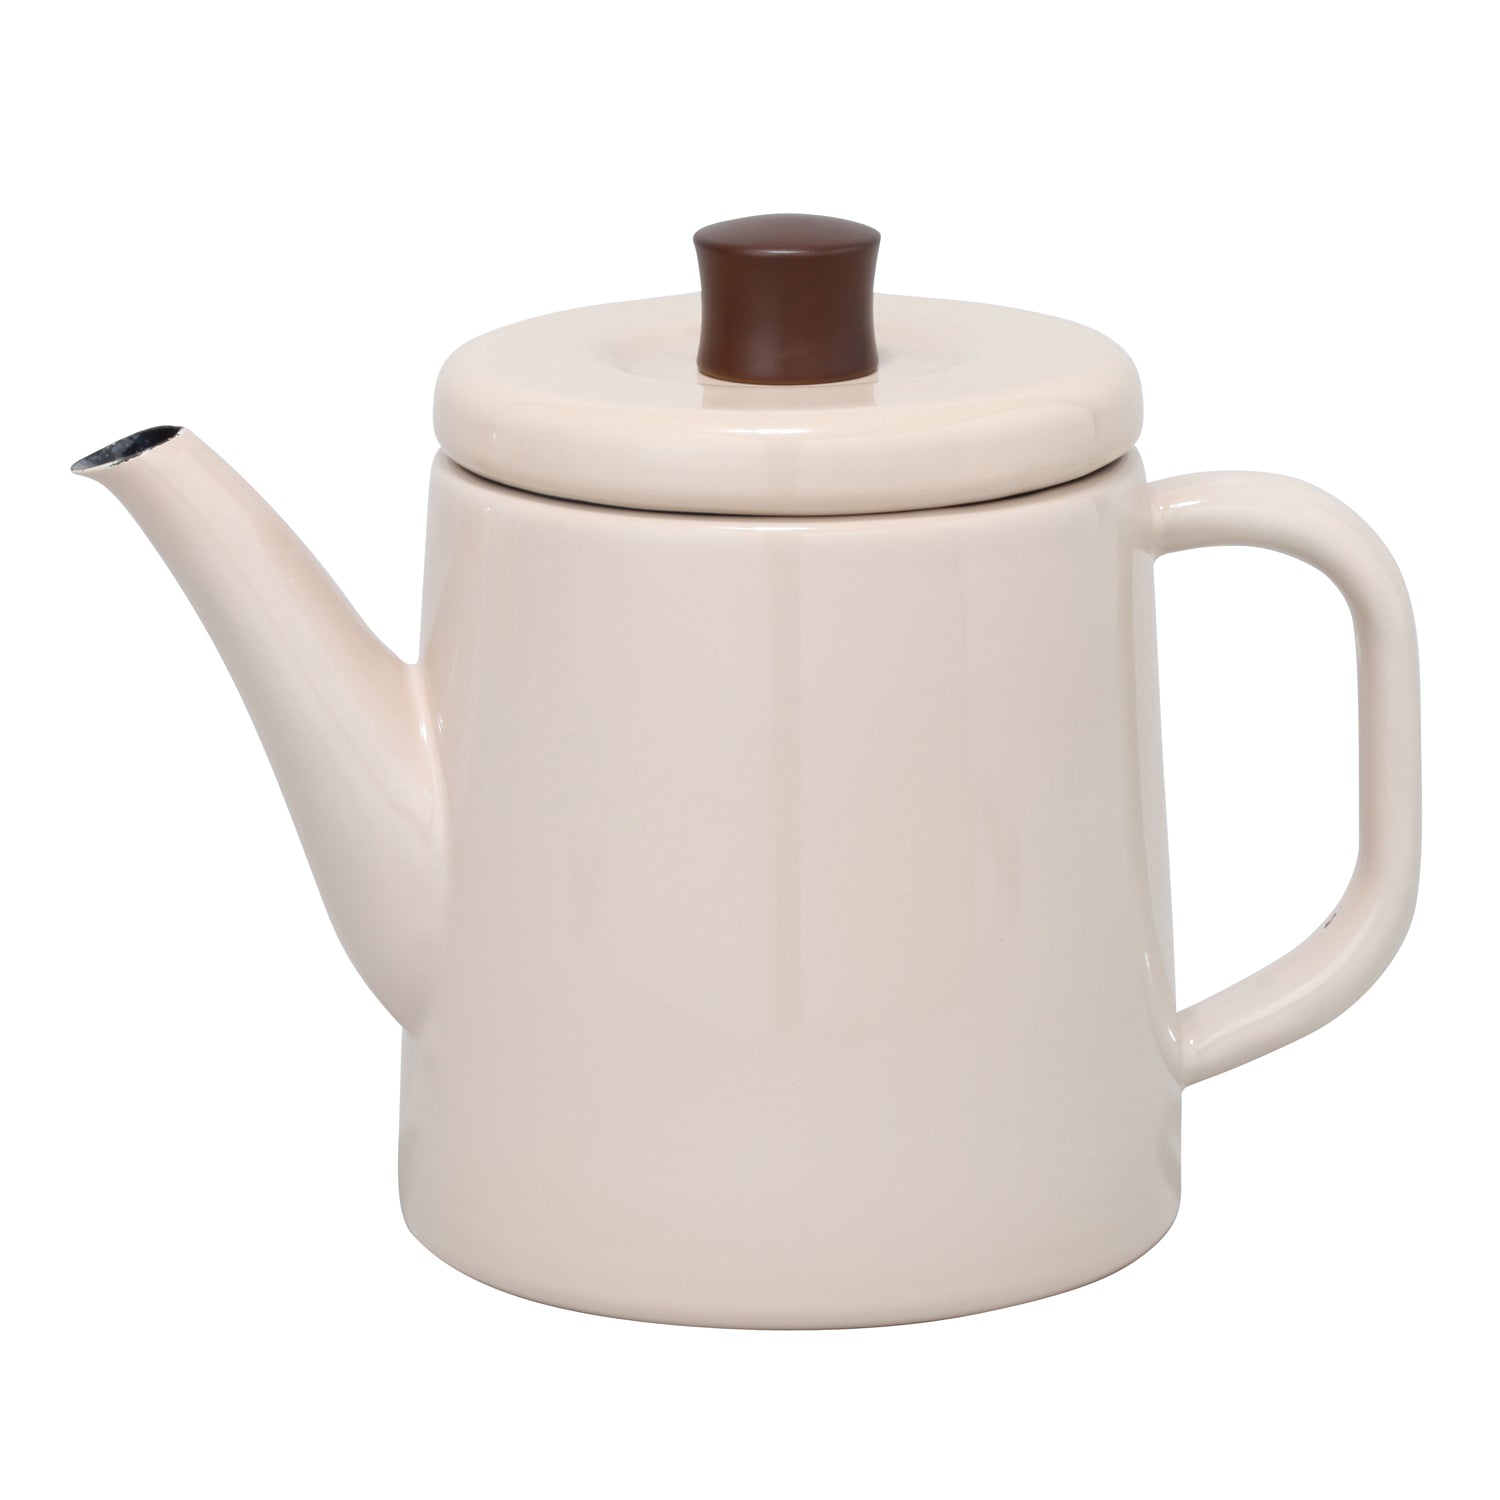 Enamel Teapot / Kettle (Beige)